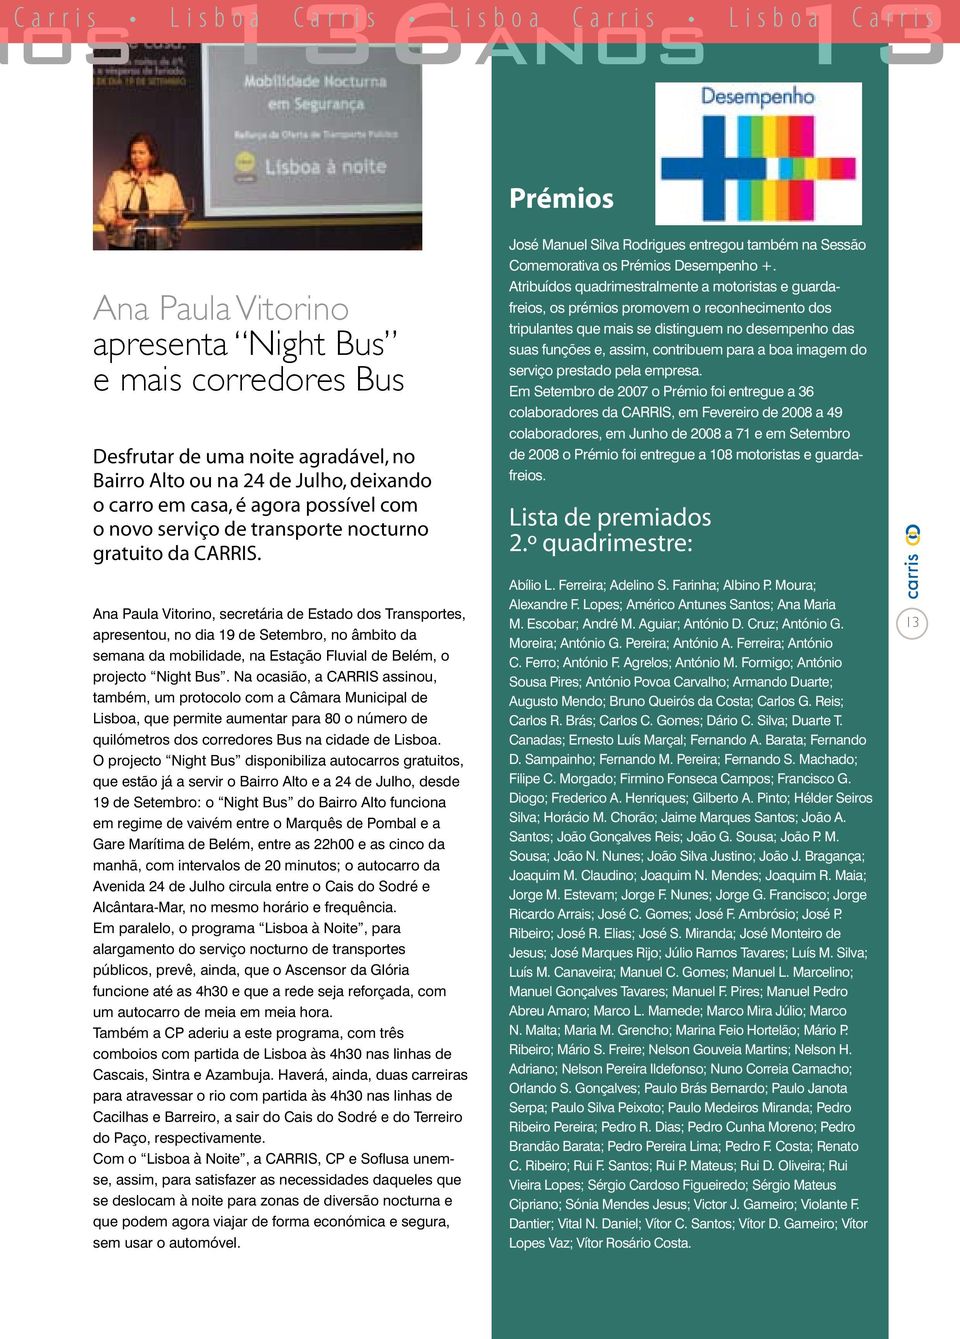 Ana Paula Vitorino, secretária de Estado dos Transportes, apresentou, no dia 19 de Setembro, no âmbito da semana da mobilidade, na Estação Fluvial de Belém, o projecto Night Bus.